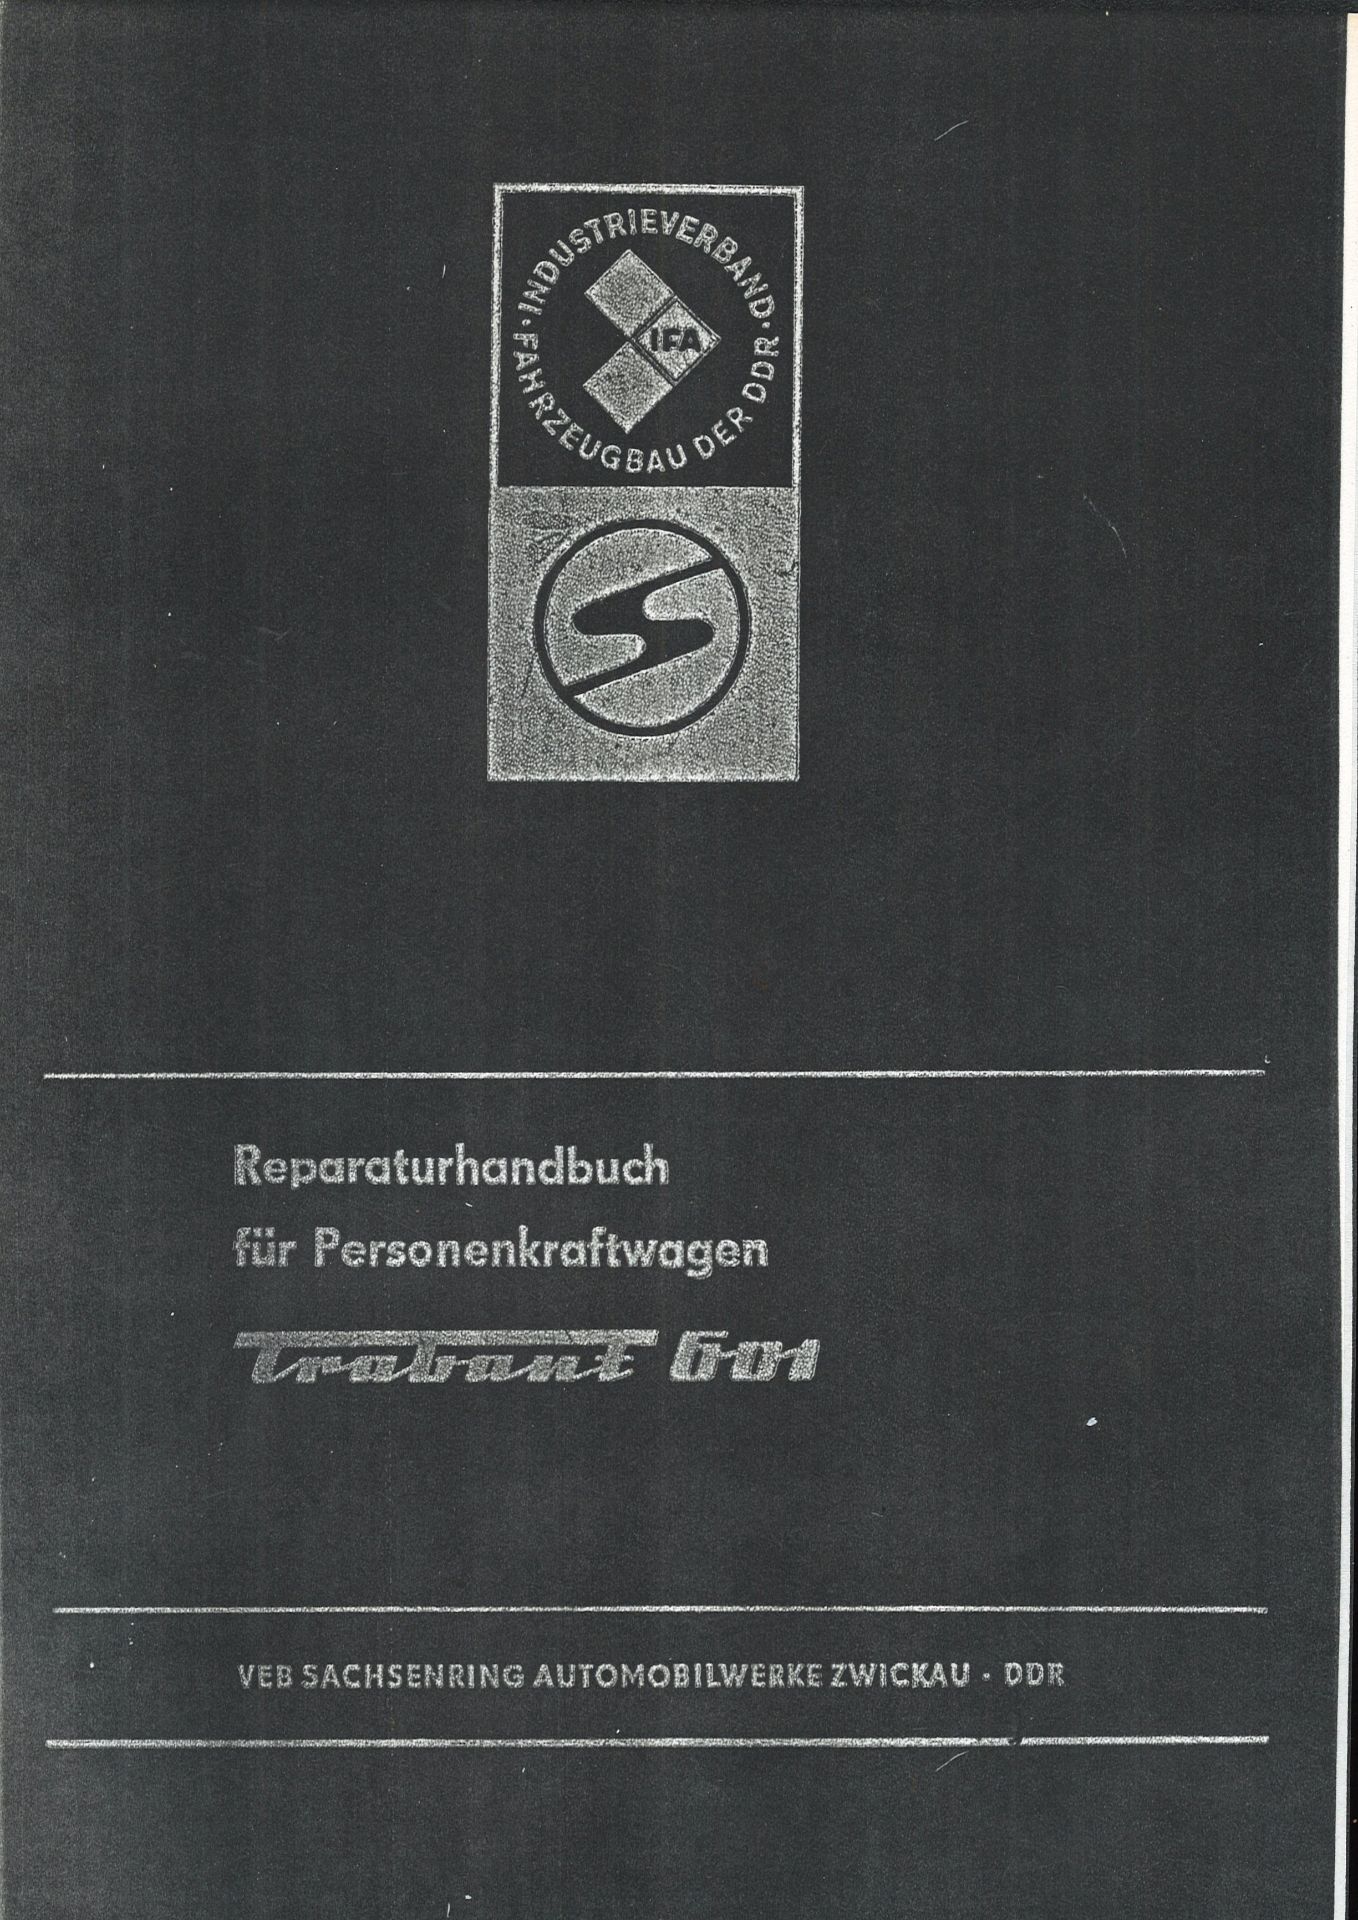 Aus Oldtimer Sammlung! Anhang zum Reparaturhandbuch "Trabant 601" Zweikreisbremsanlage. Selbst